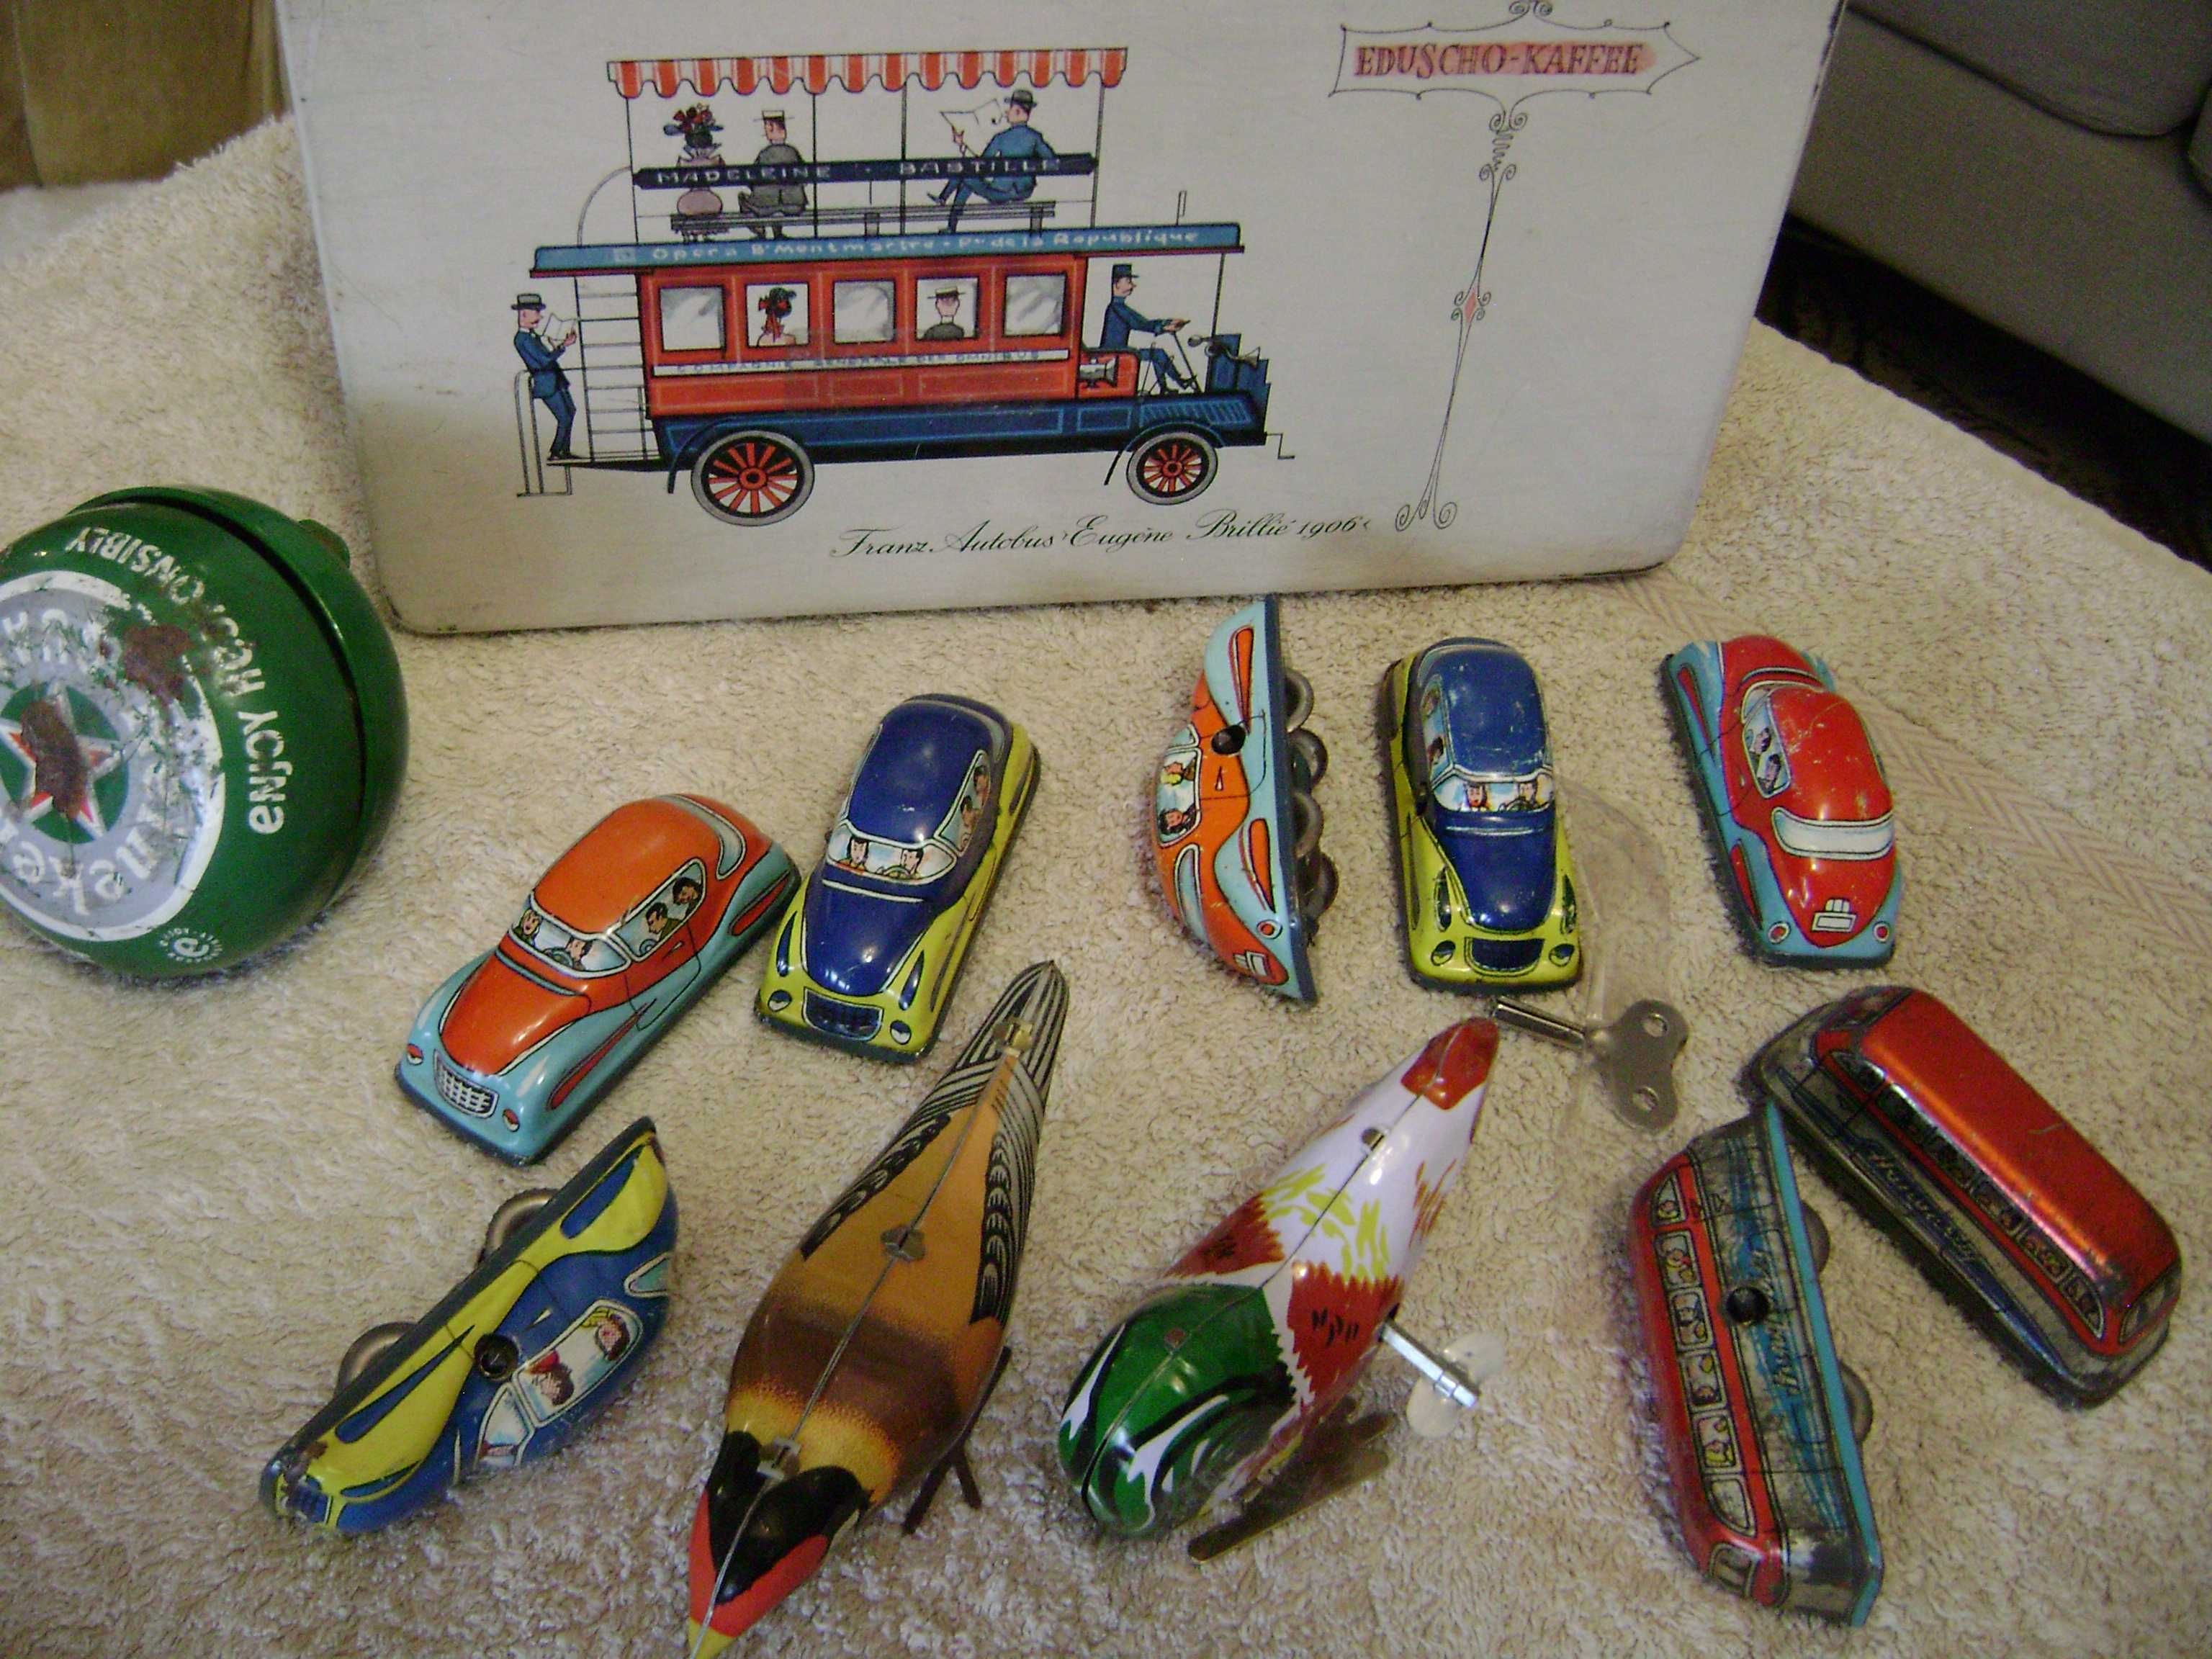 Stare blaszane zabawki ; autobusy  , ptaszki  , autka , puszka